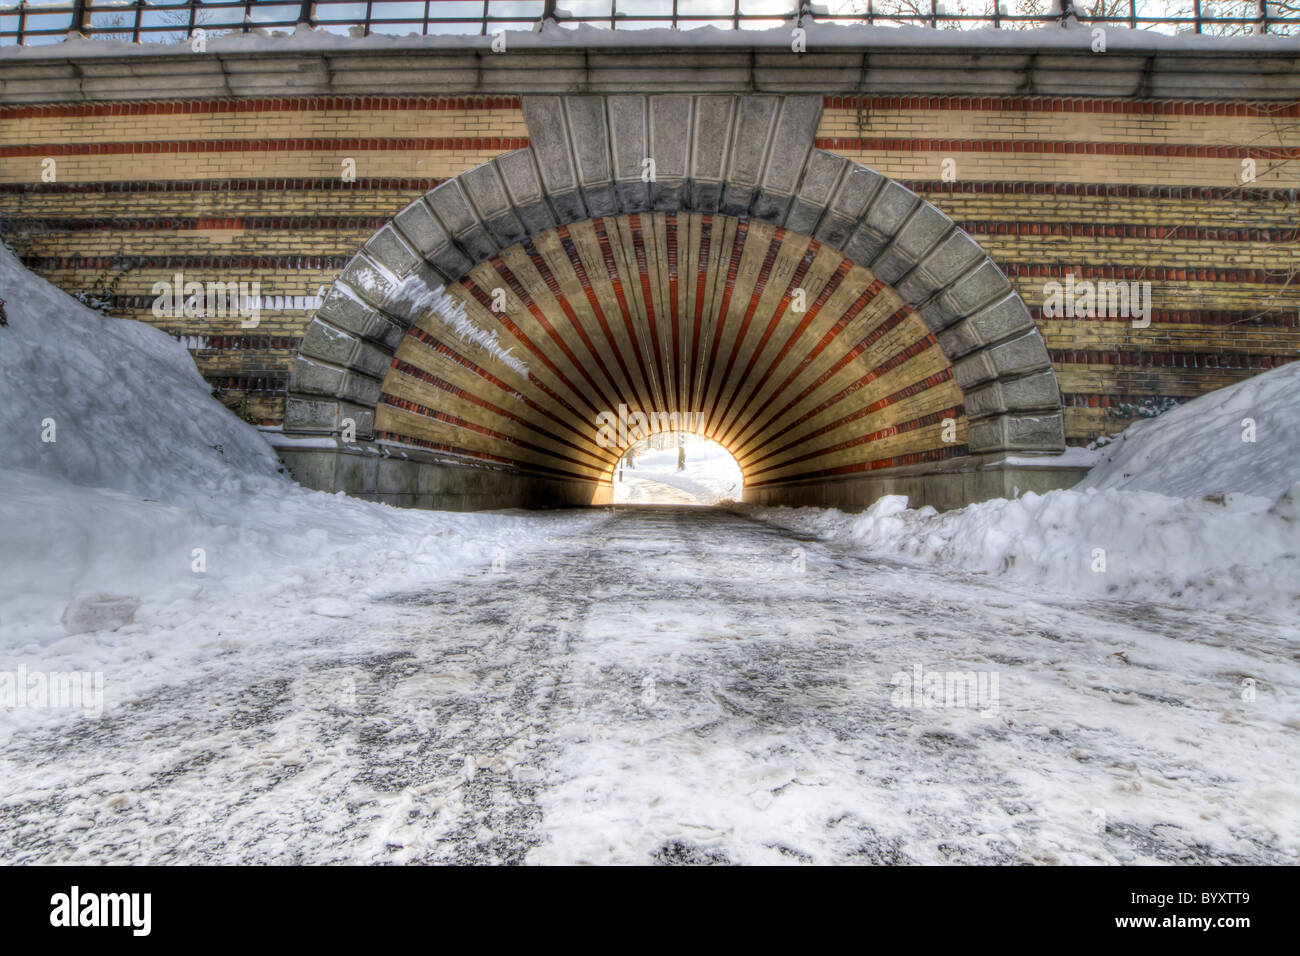 Spielkameraden Arch im Central Park am Morgen nach einem Schneesturm Stockfoto